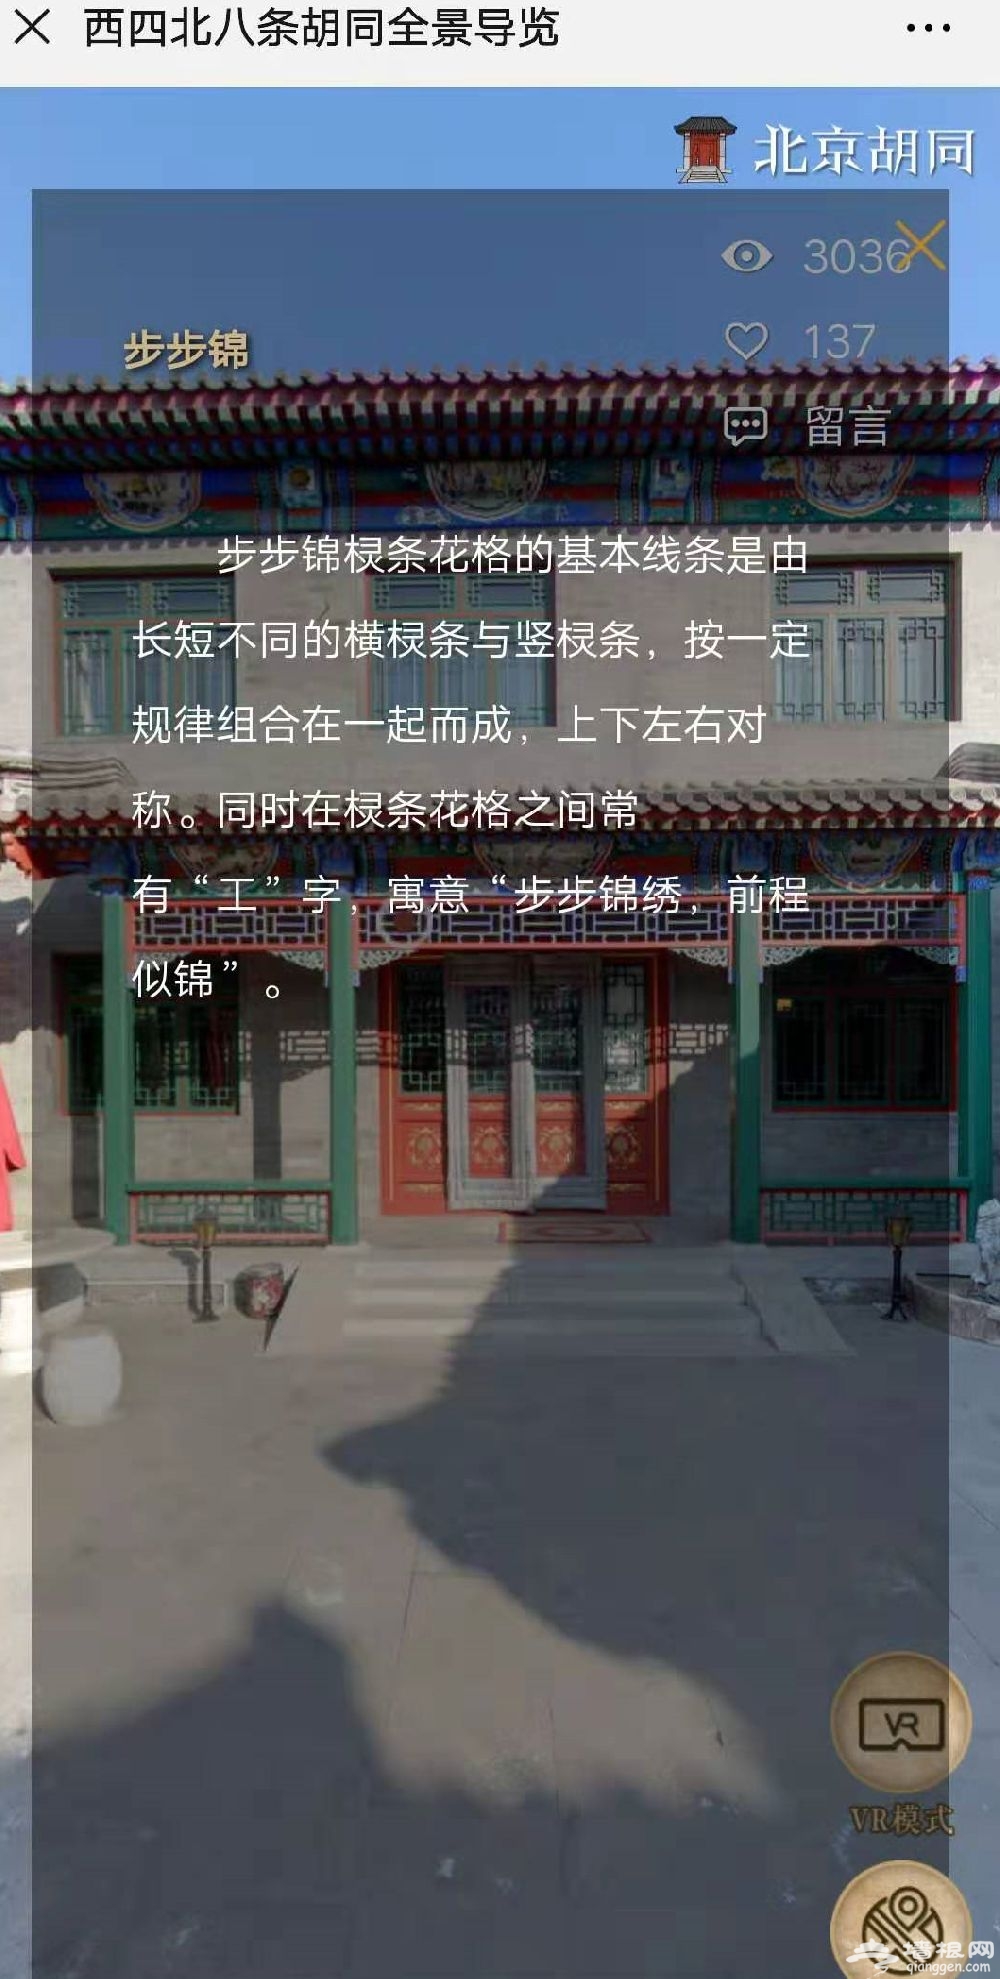 北京首家线上博物馆已上线 AR游览带你沉浸式逛胡同[墙根网]